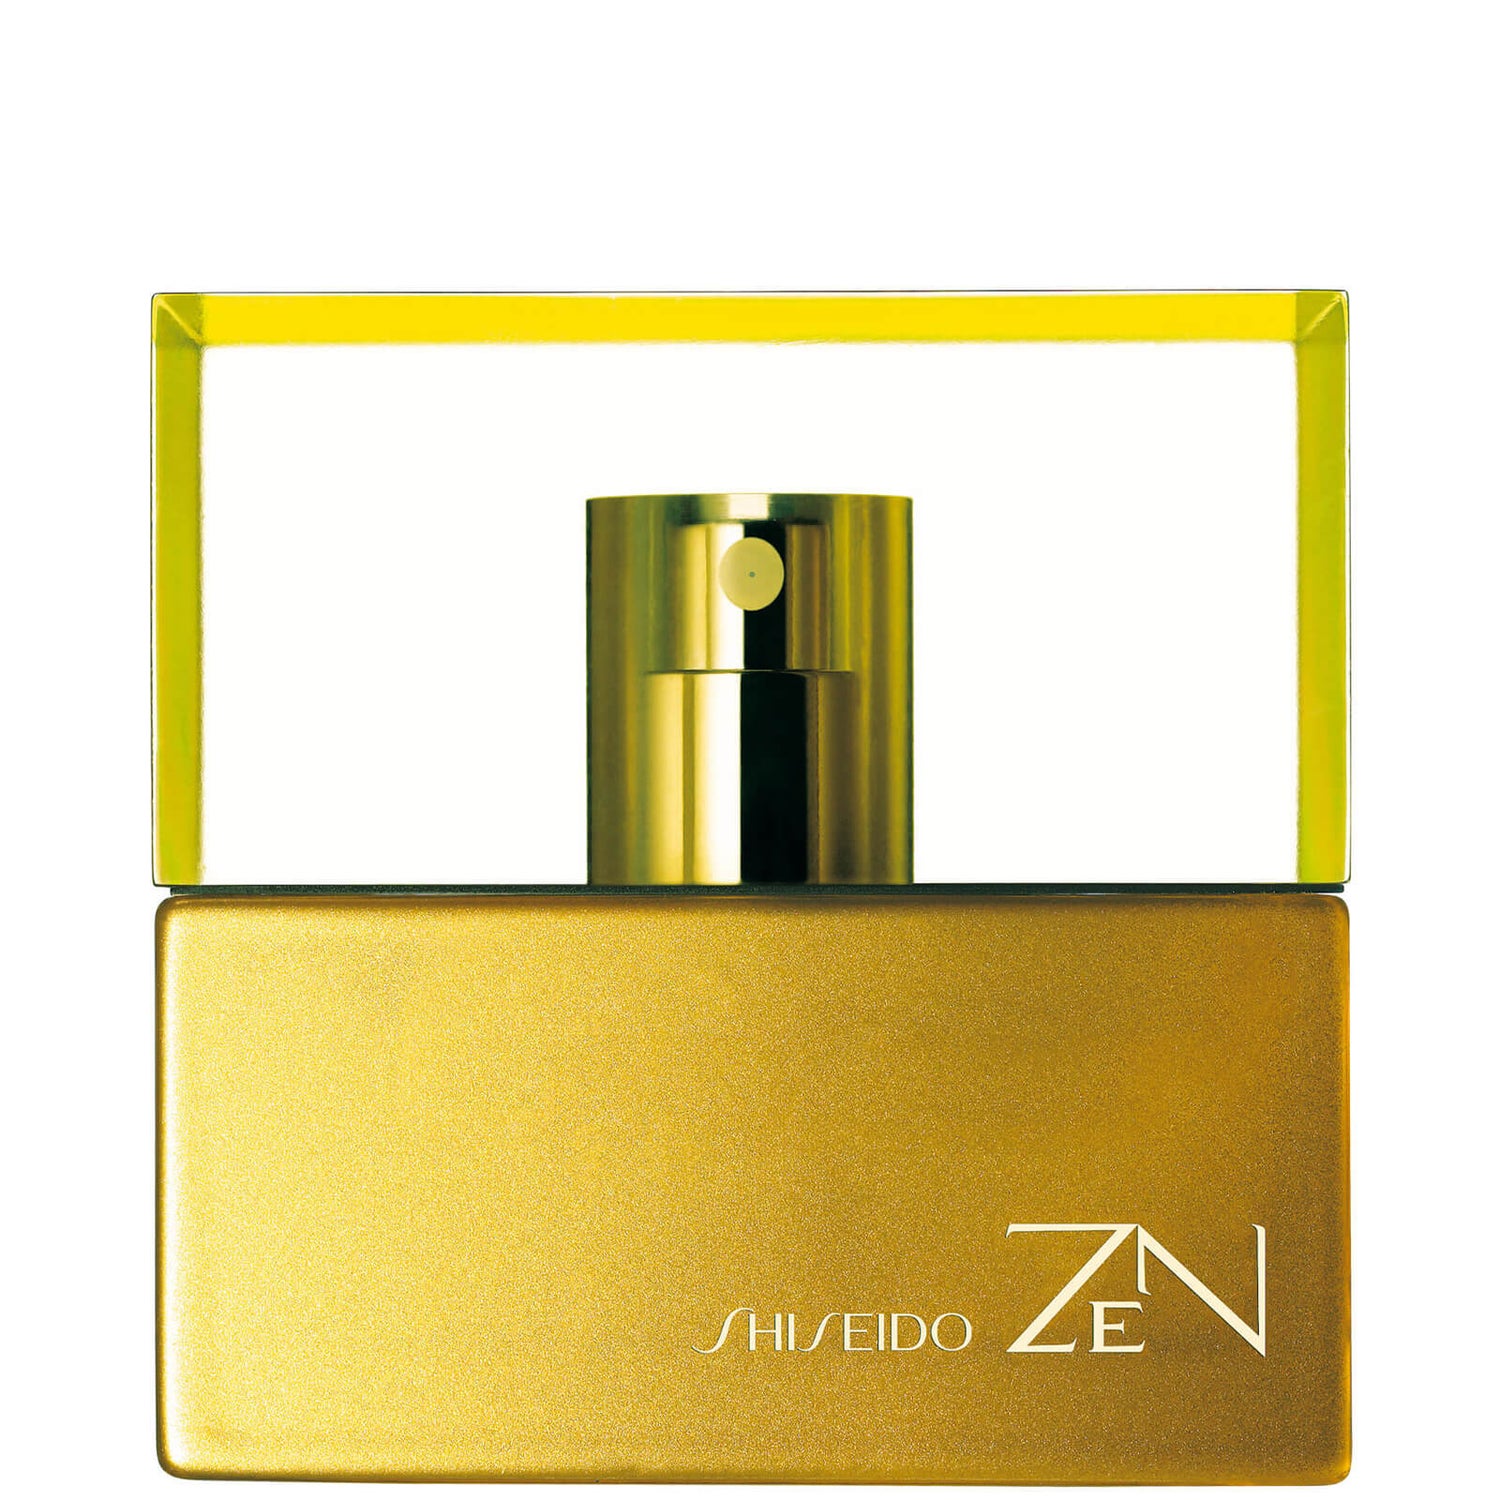 Shiseido Zen Eau de Parfum - 50ml